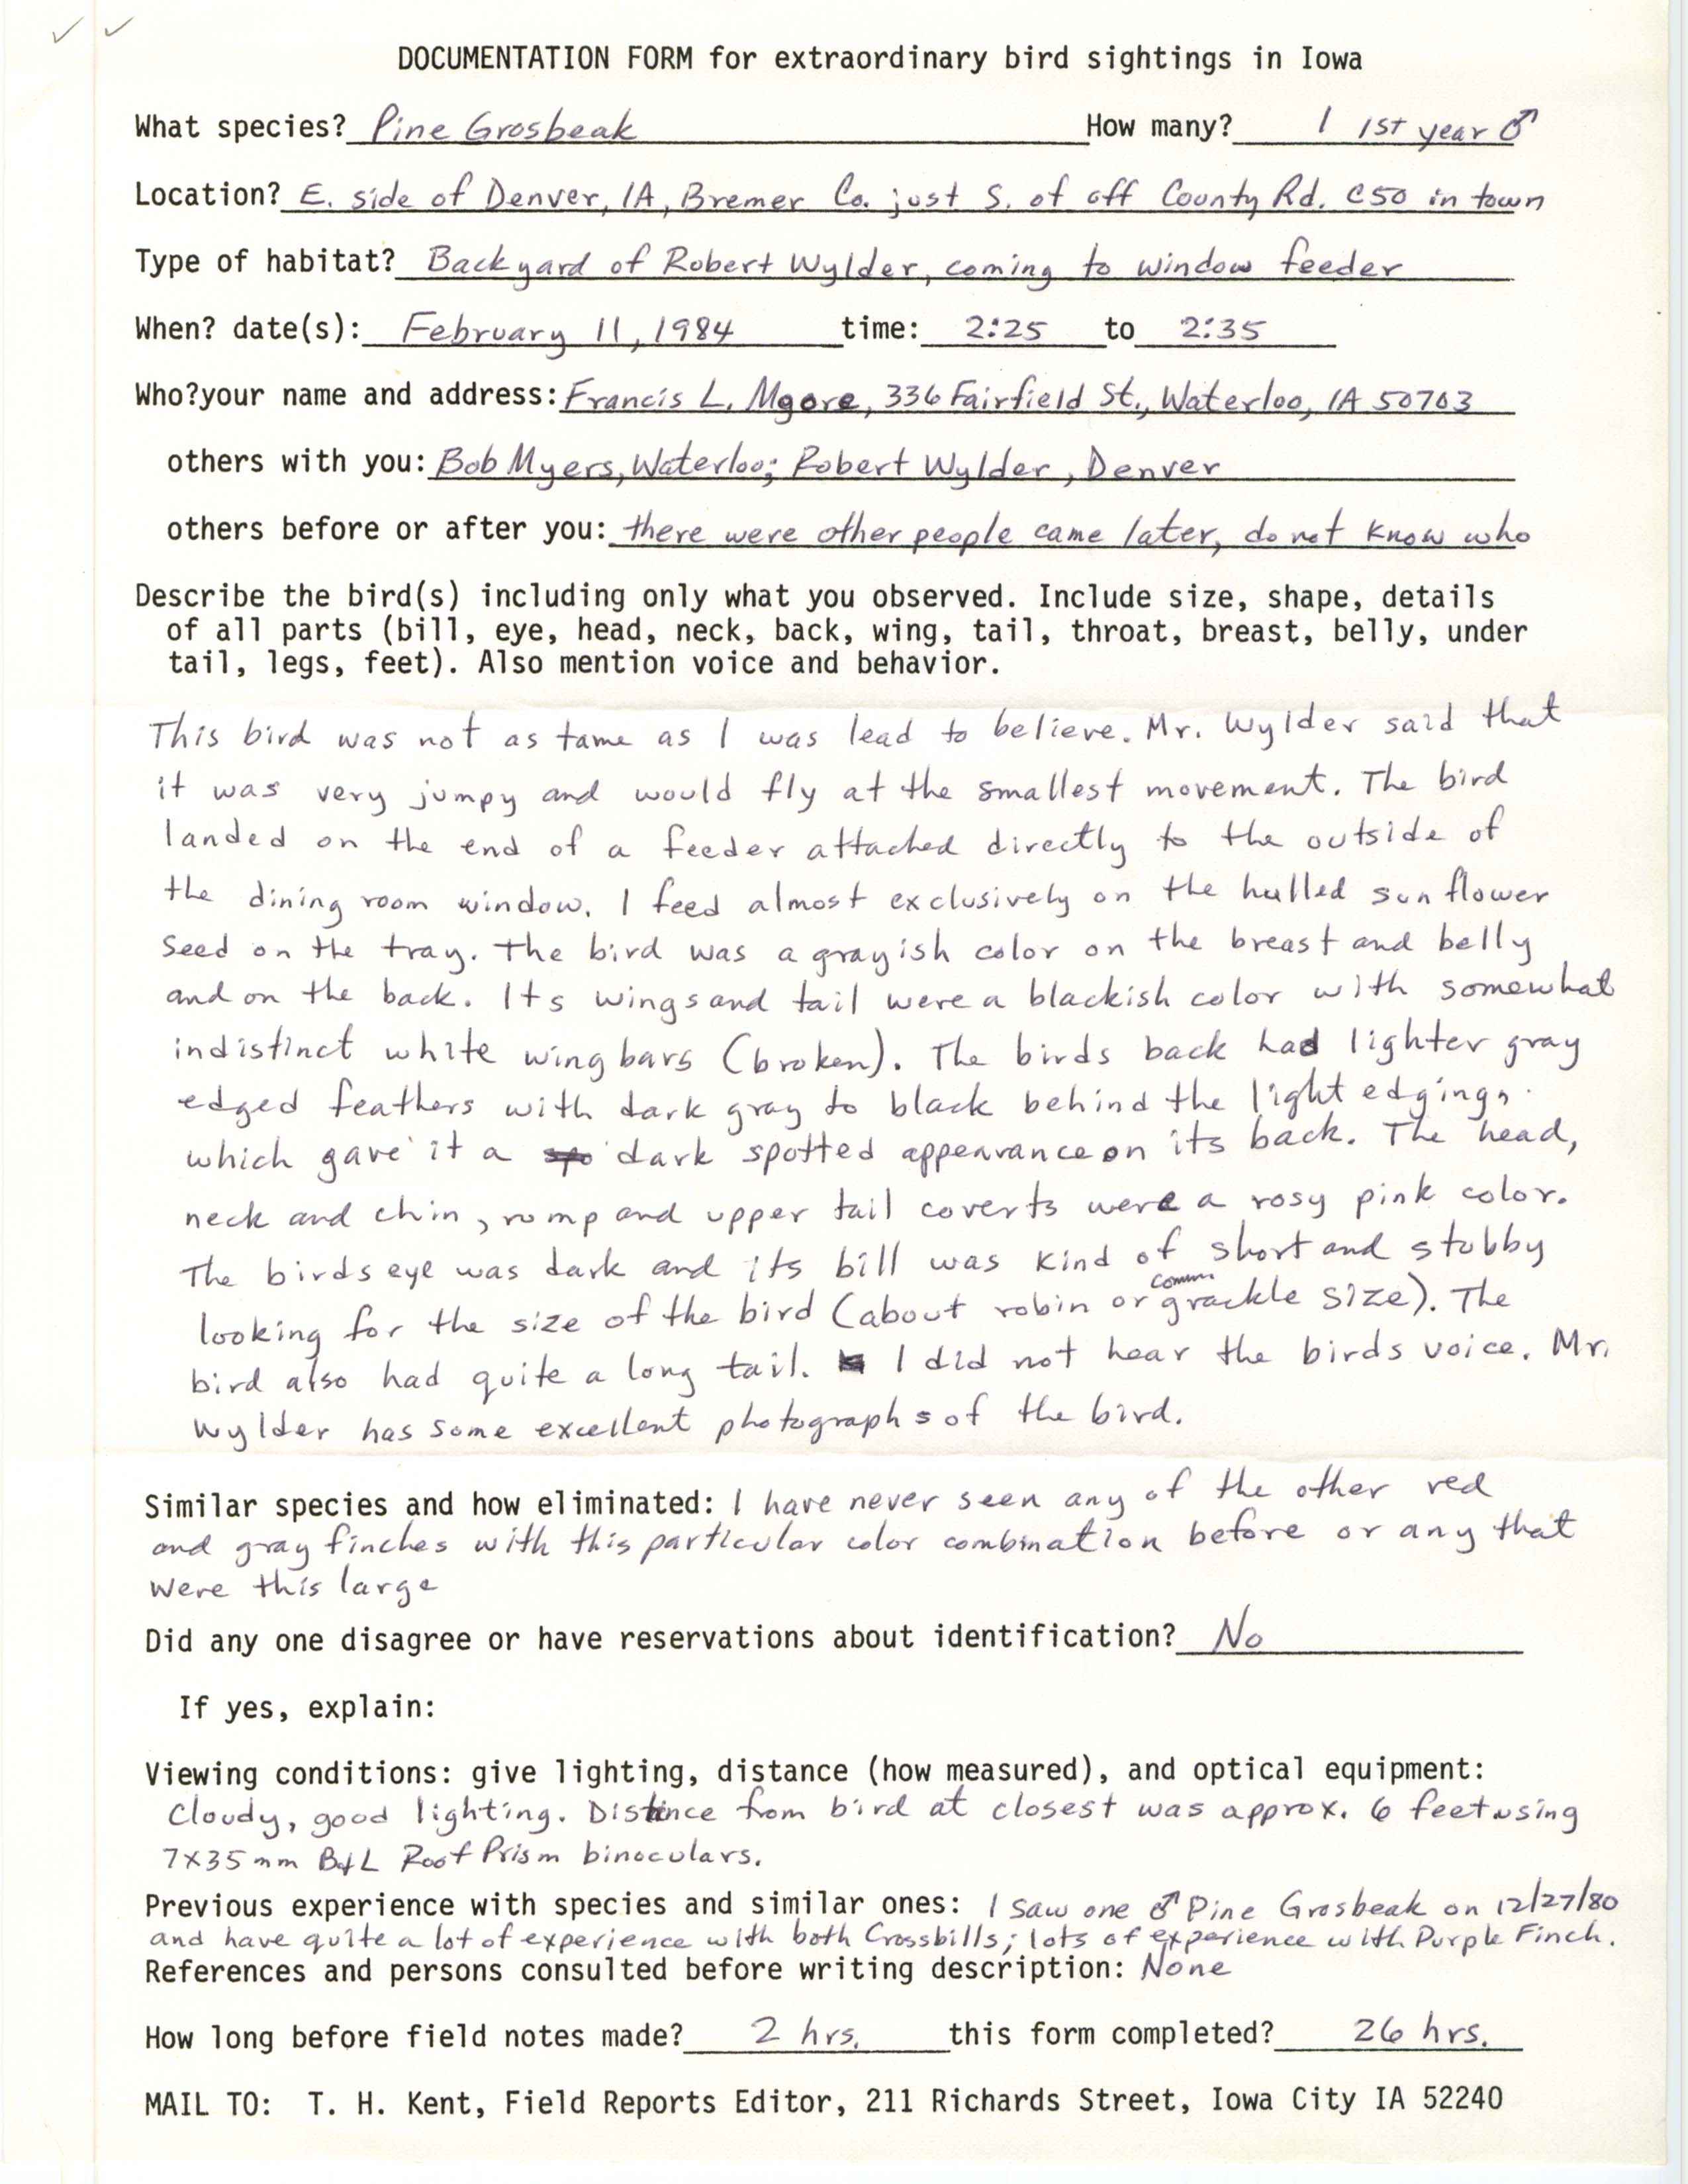 Rare bird documentation form for Pine Grosbeak at Denver, 1984